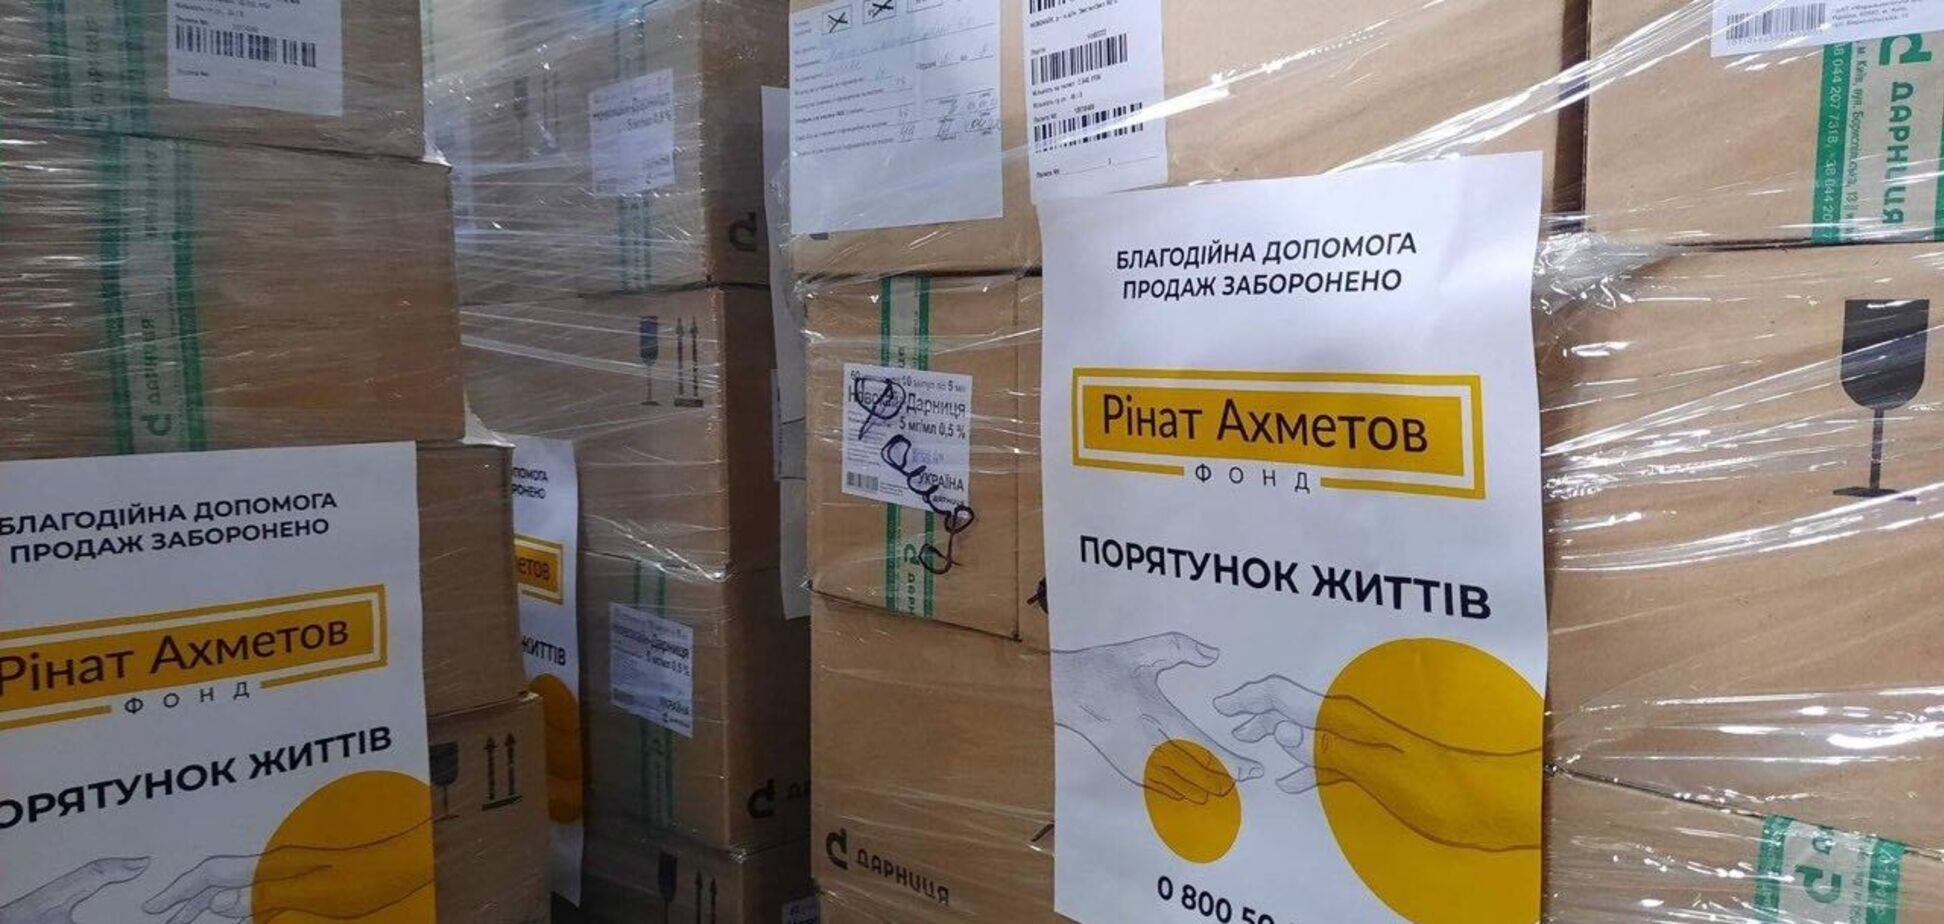 Фонд Рината Ахметова передал очередную партию медикаментов Донецкой области